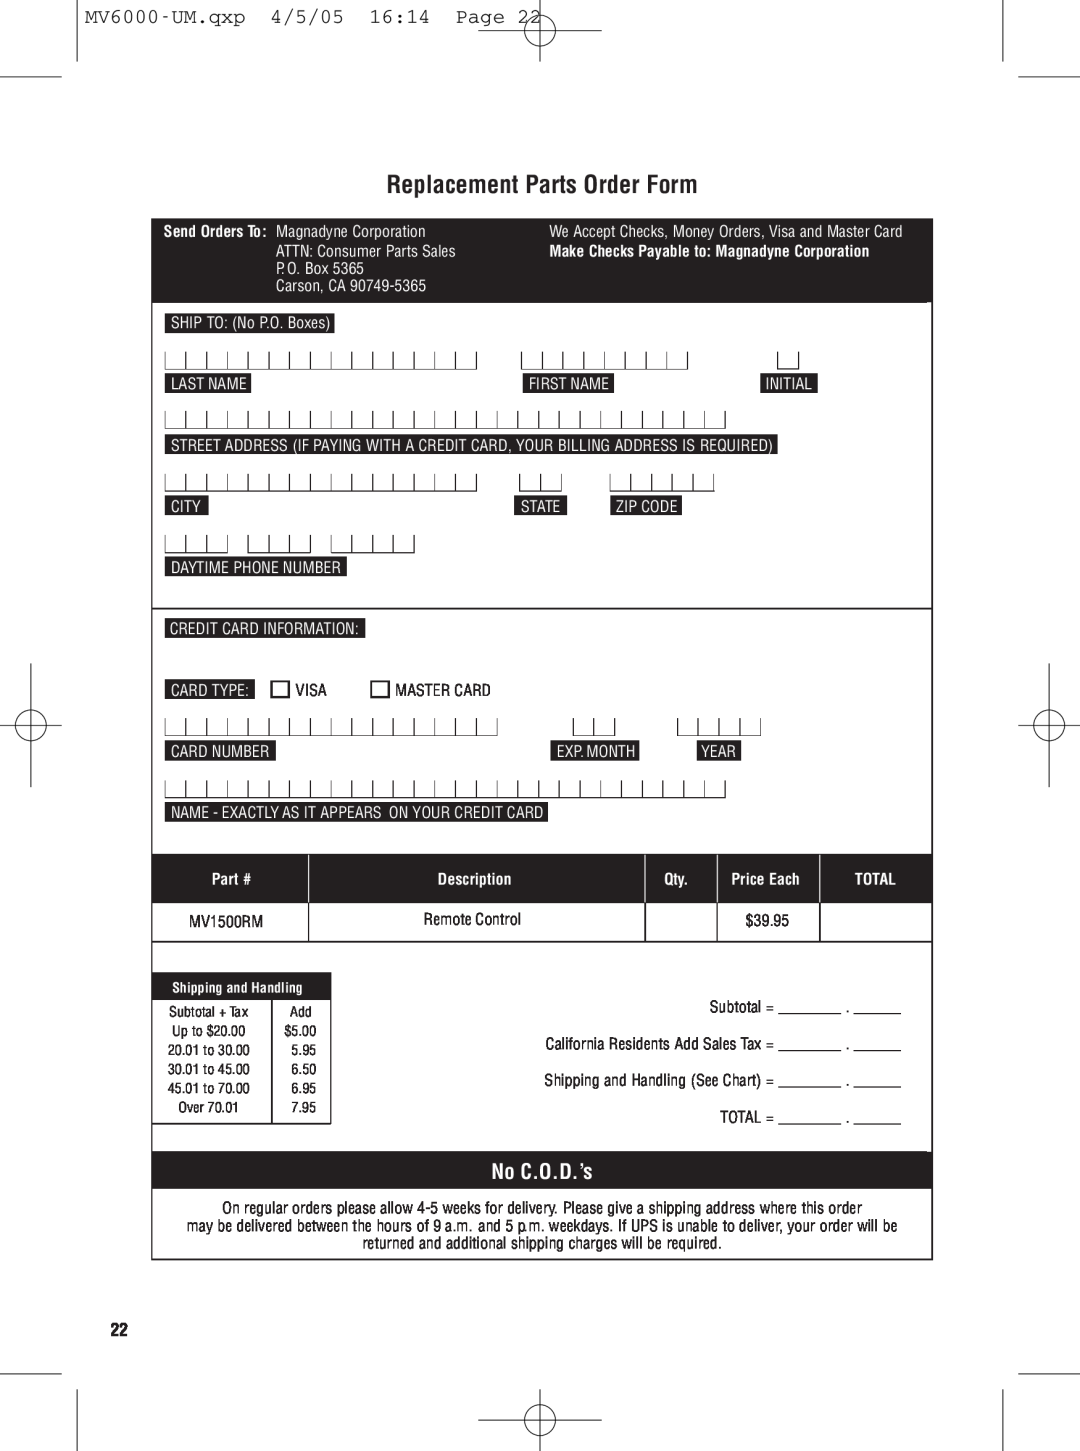 Magnadyne MV6000C Replacement Parts Order Form, No C.O.D.’s, MV6000-UM.qxp 4/5/05 1614 Page, Description, Price Each 